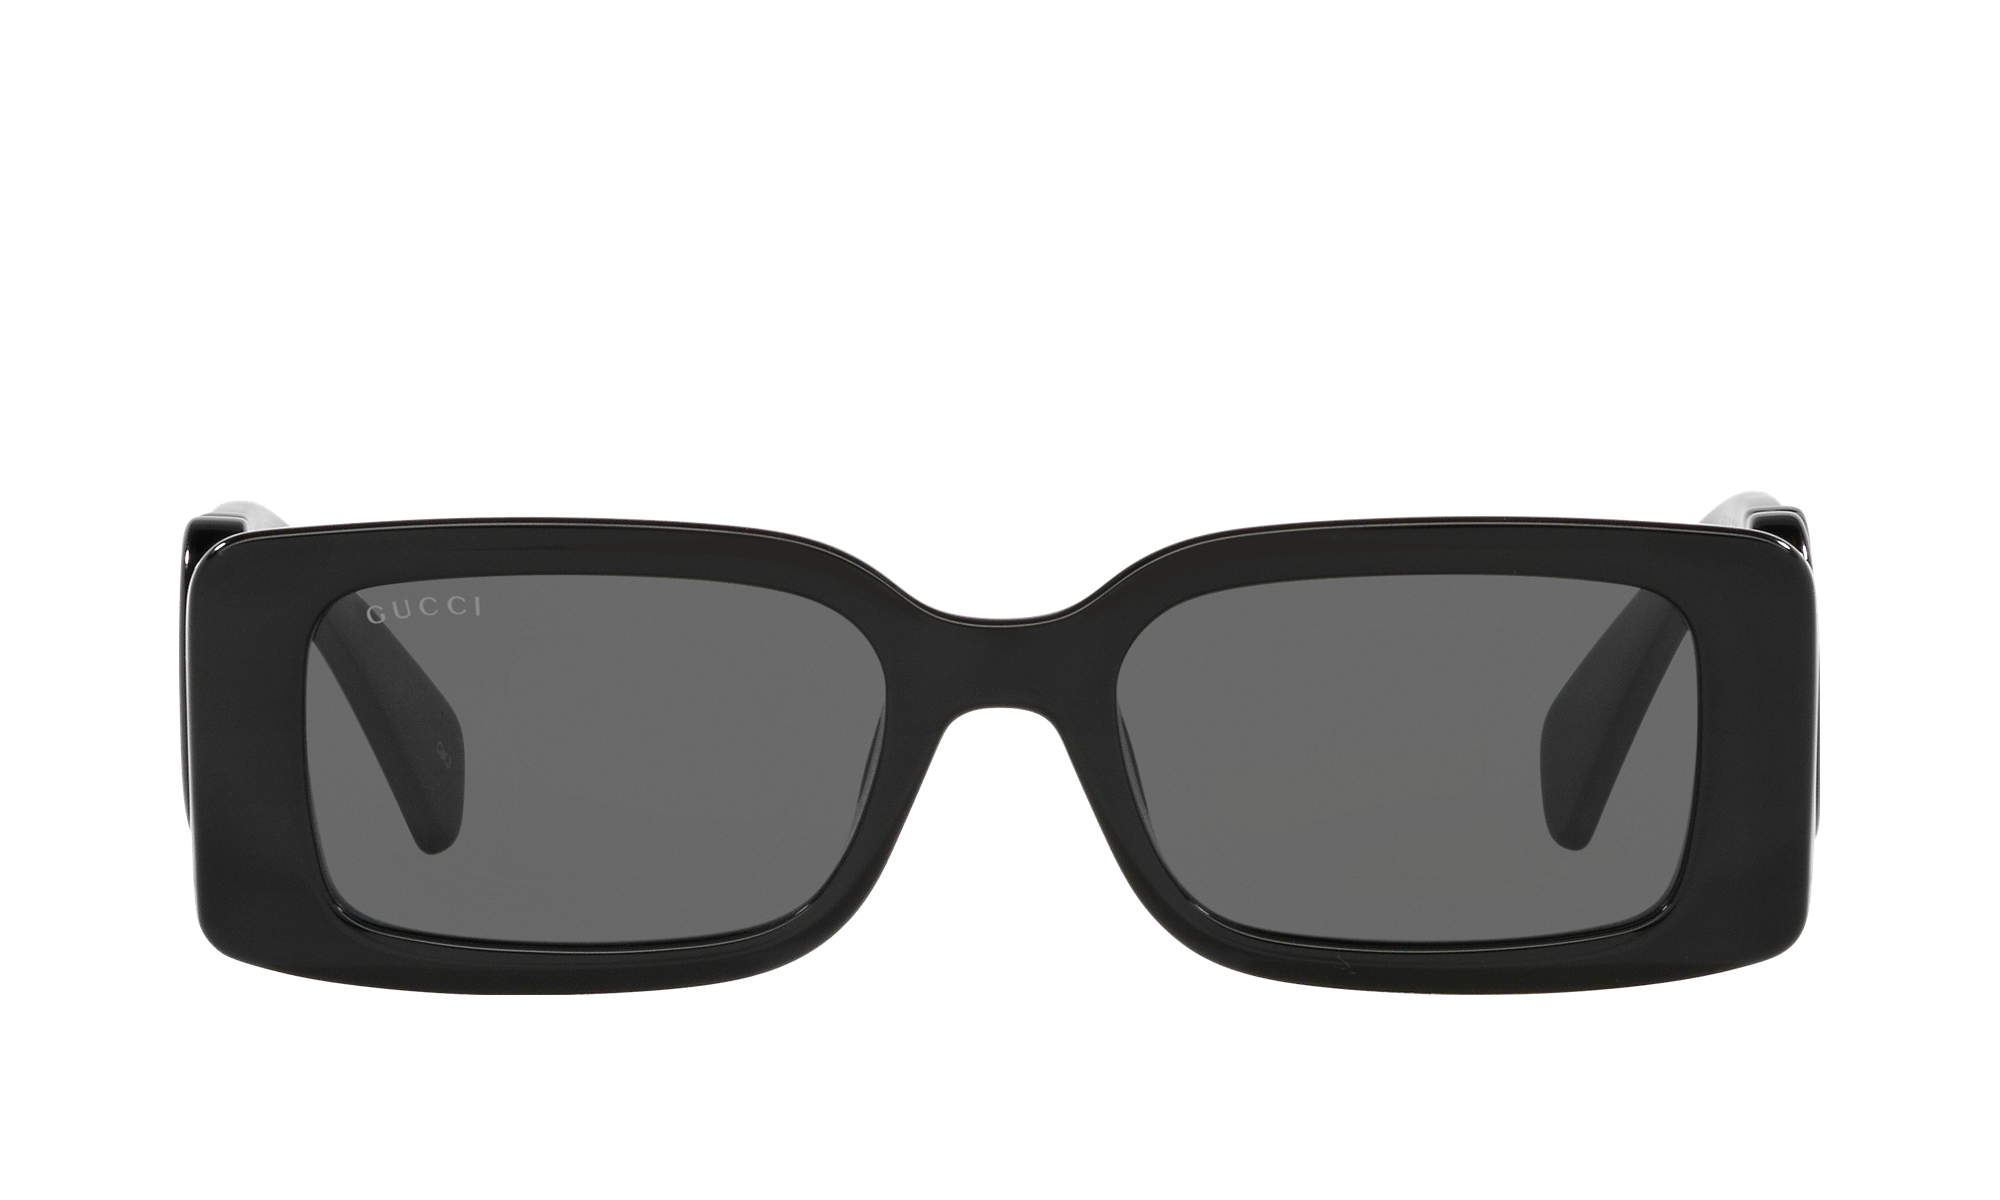 Buy SBGT Retro Square Sunglasses Black For Men & Women Online @ Best Prices  in India | Flipkart.com